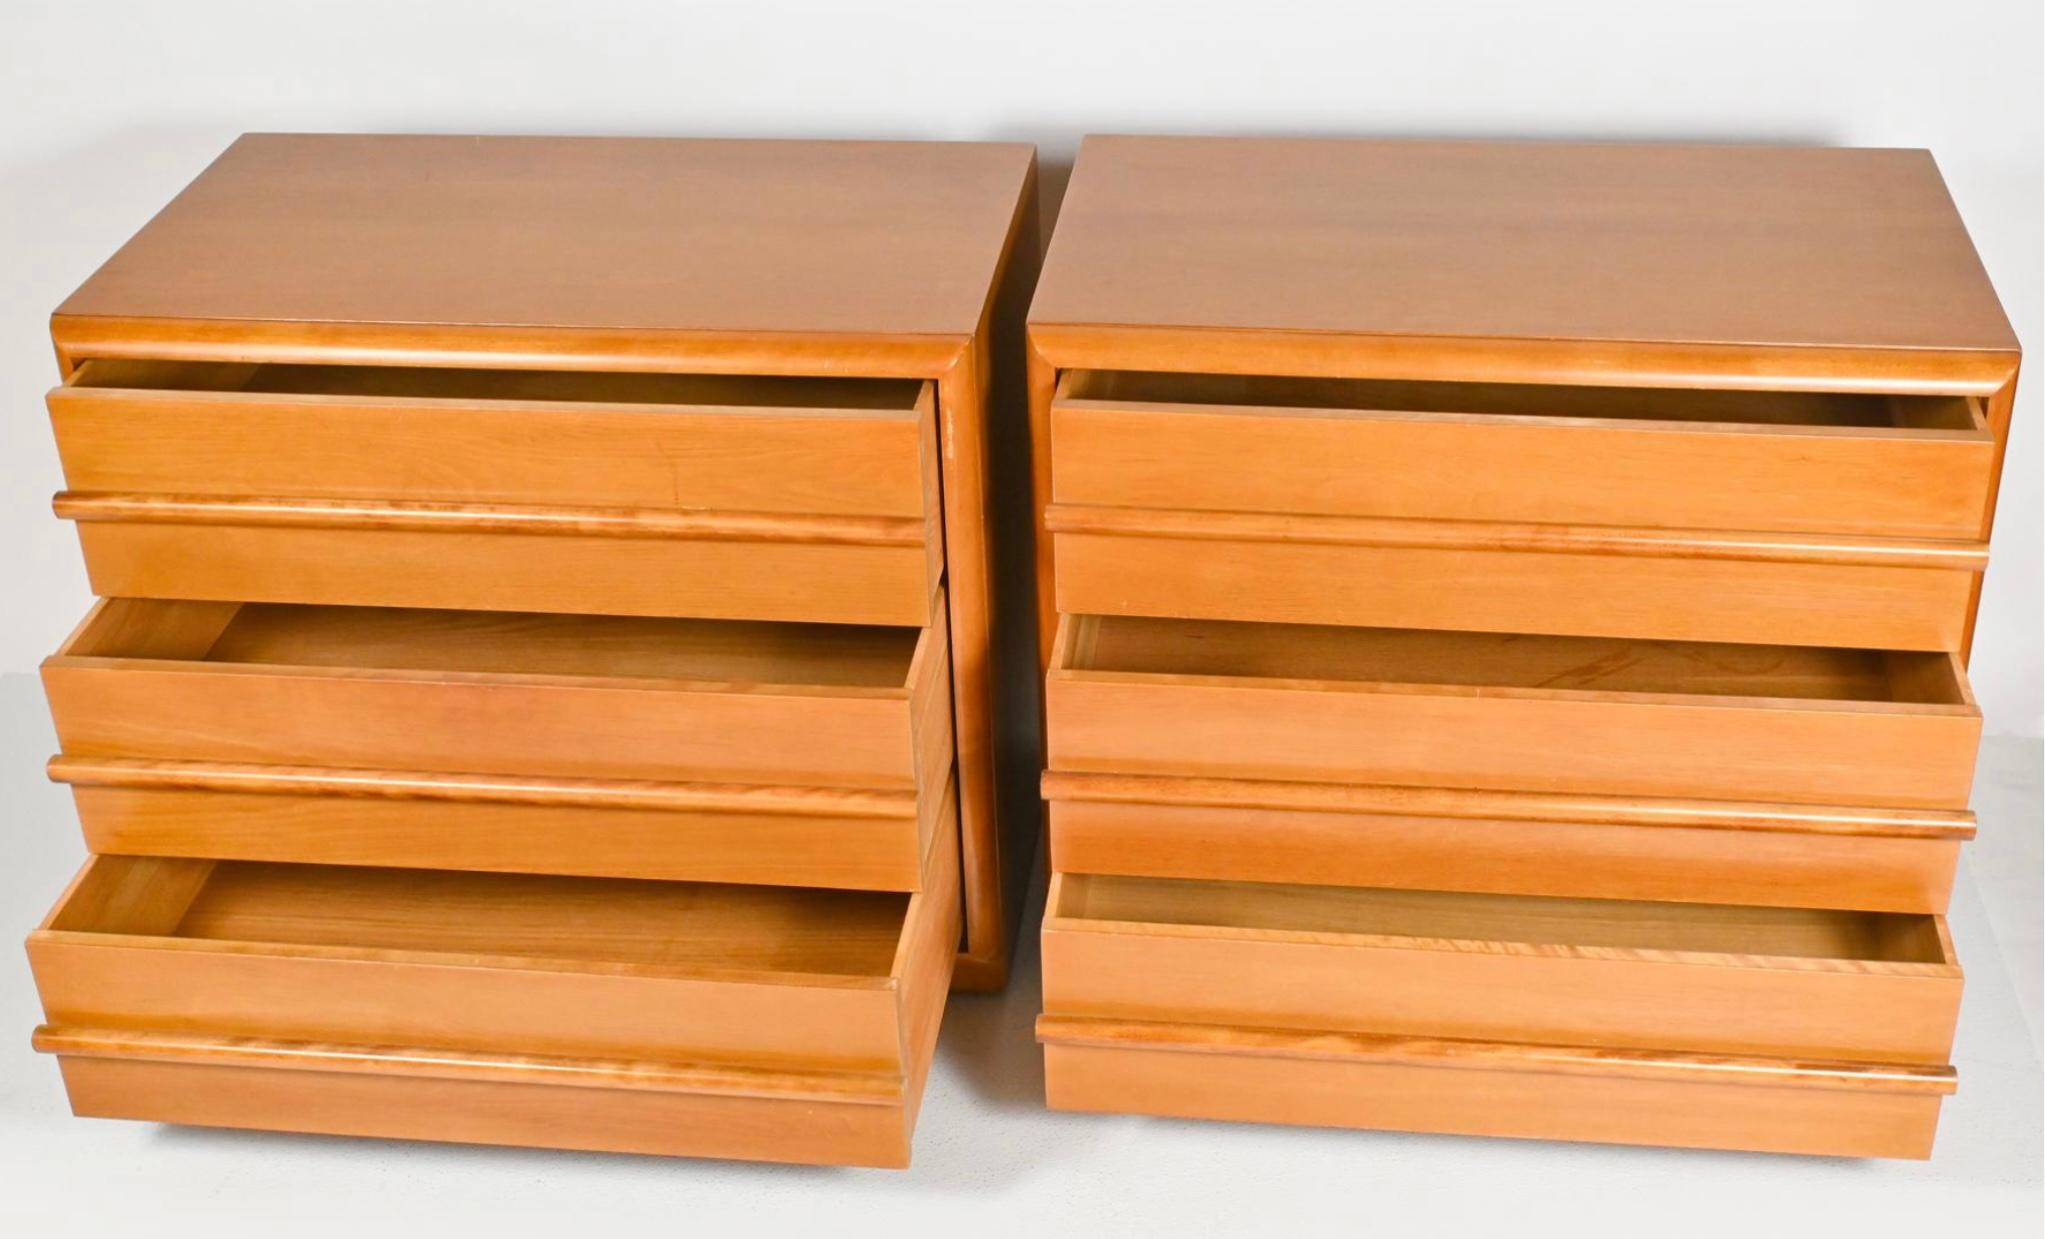 Cette paire de commodes à trois tiroirs conçue par AT&T Gibbings pour Widdicomb présente un design sophistiqué et sur mesure.
Chaque pièce comporte trois tiroirs profonds à queue d'aronde et des poignées horizontales en bois profilé. Chacune porte